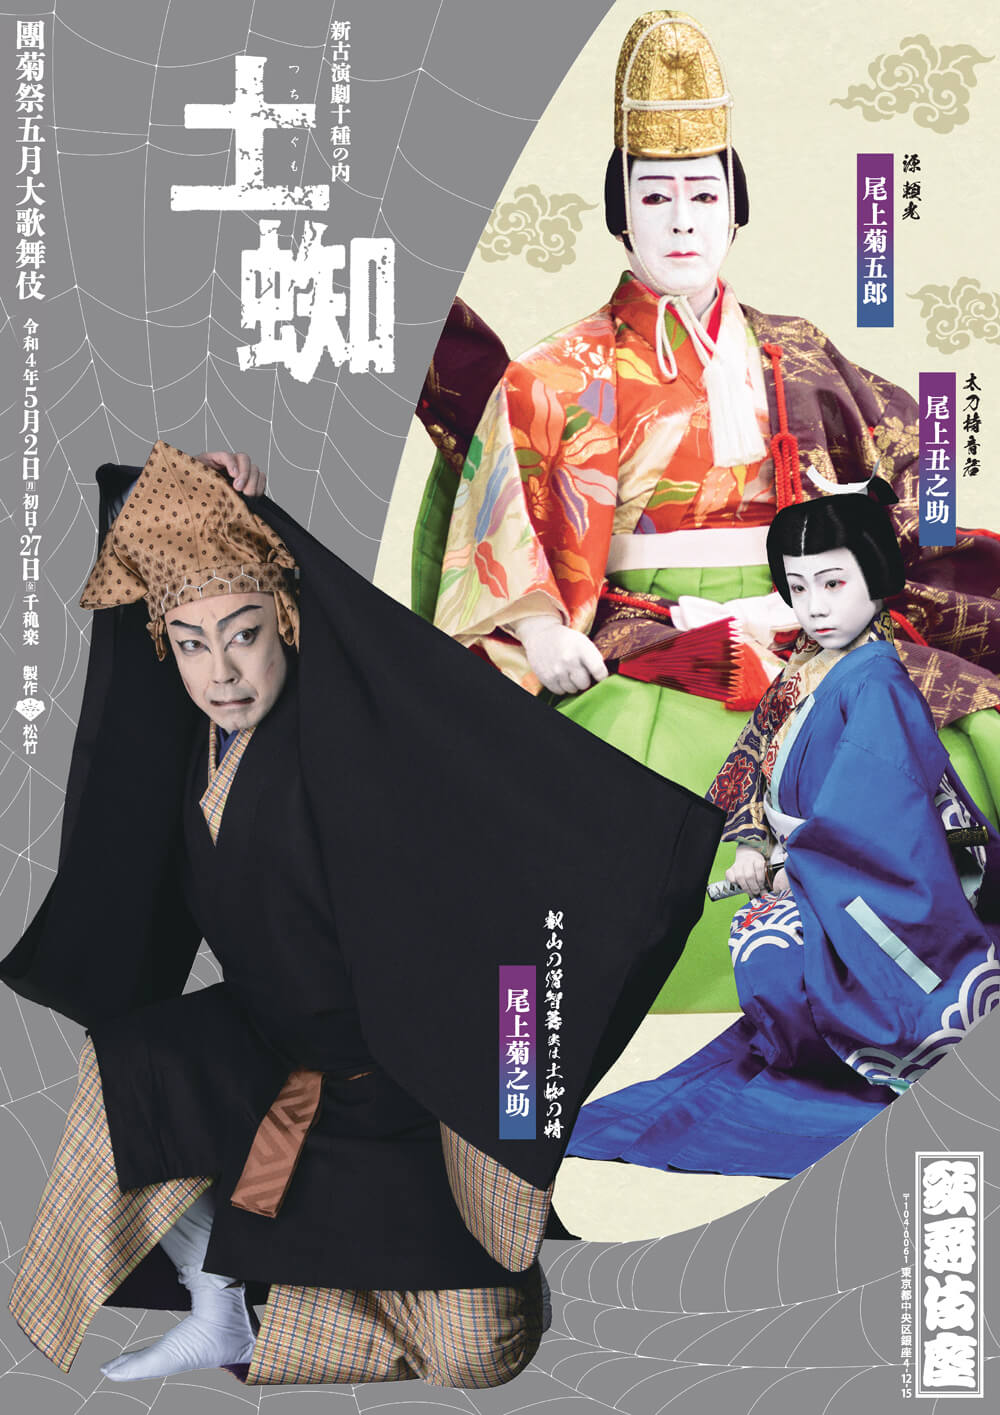 歌舞伎座「團菊祭五月大歌舞伎」特別ポスター公開